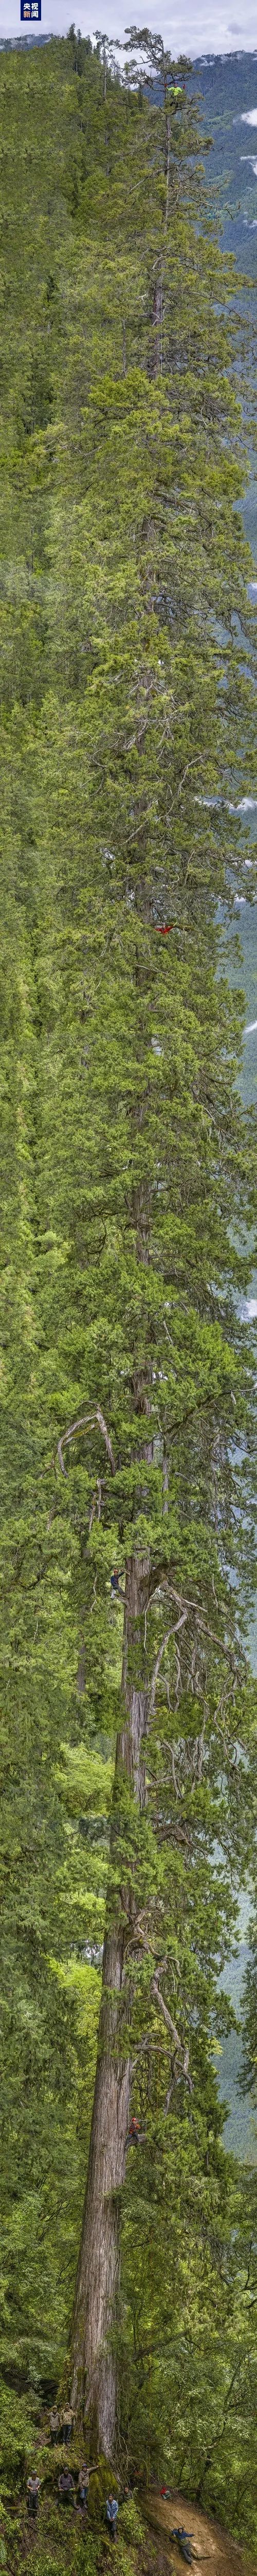 福建三人登顶亚洲最高树 发现两类疑似新物种